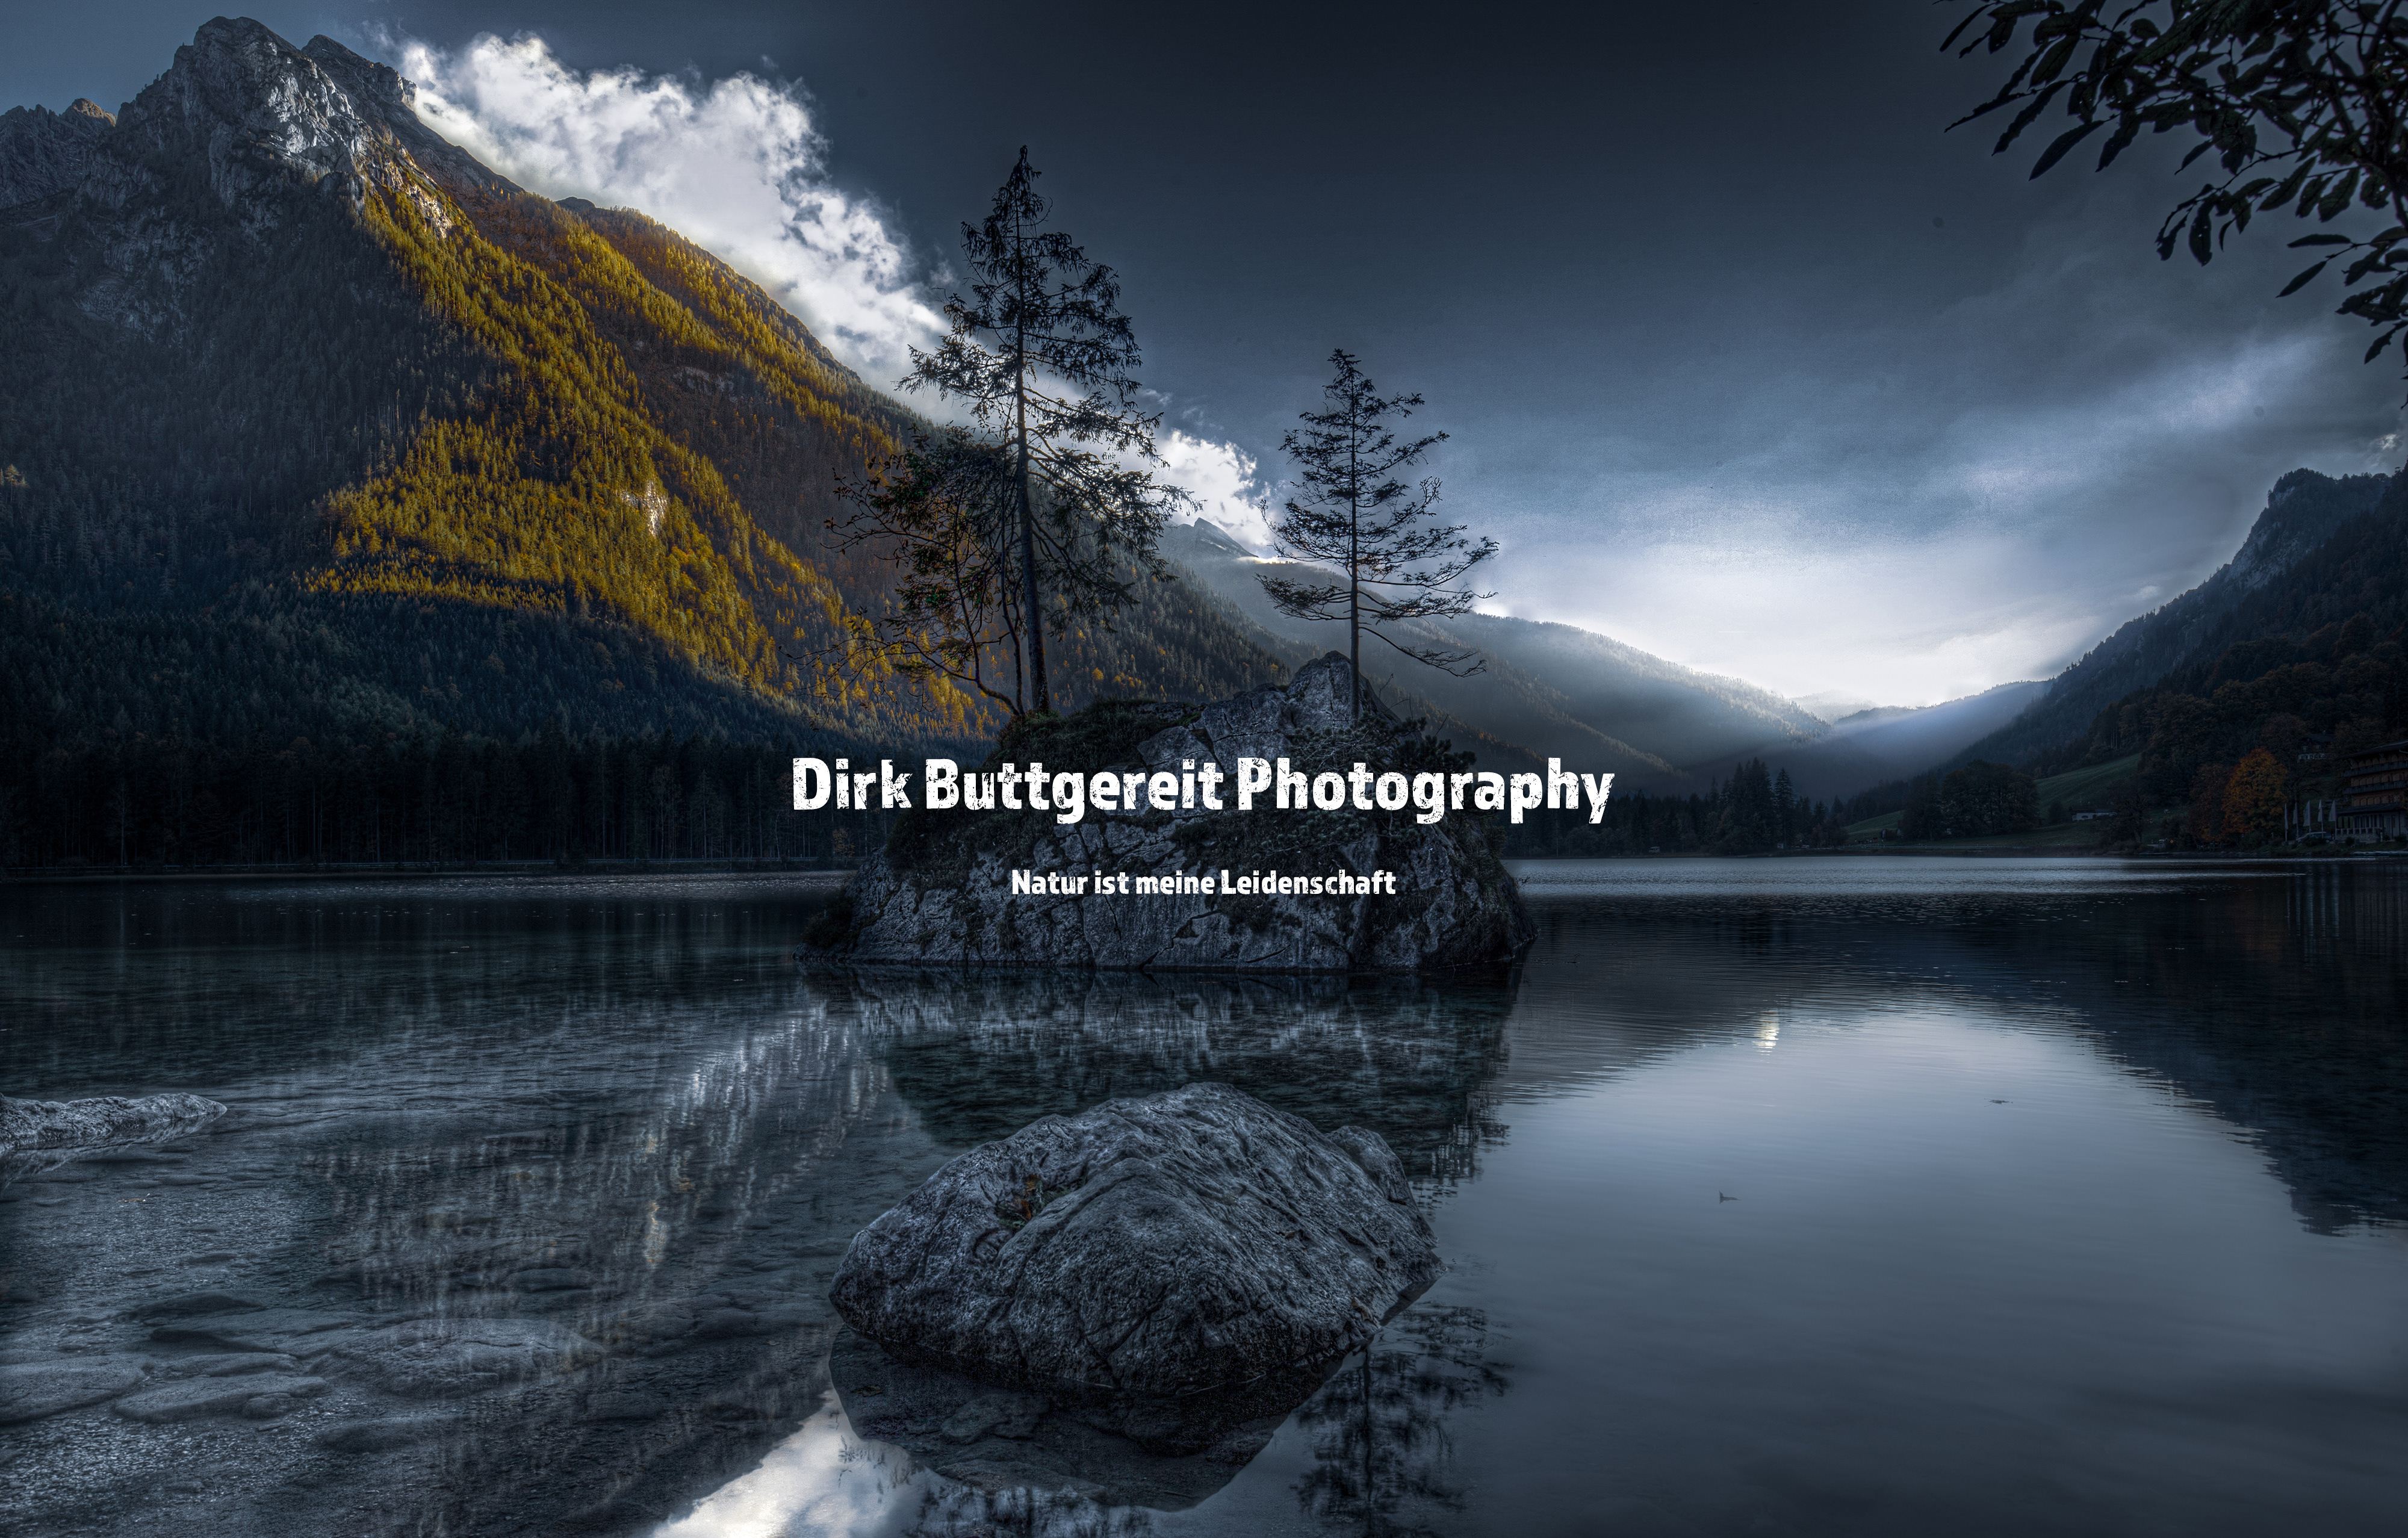 (c) Dirk-buttgereit-photography.de